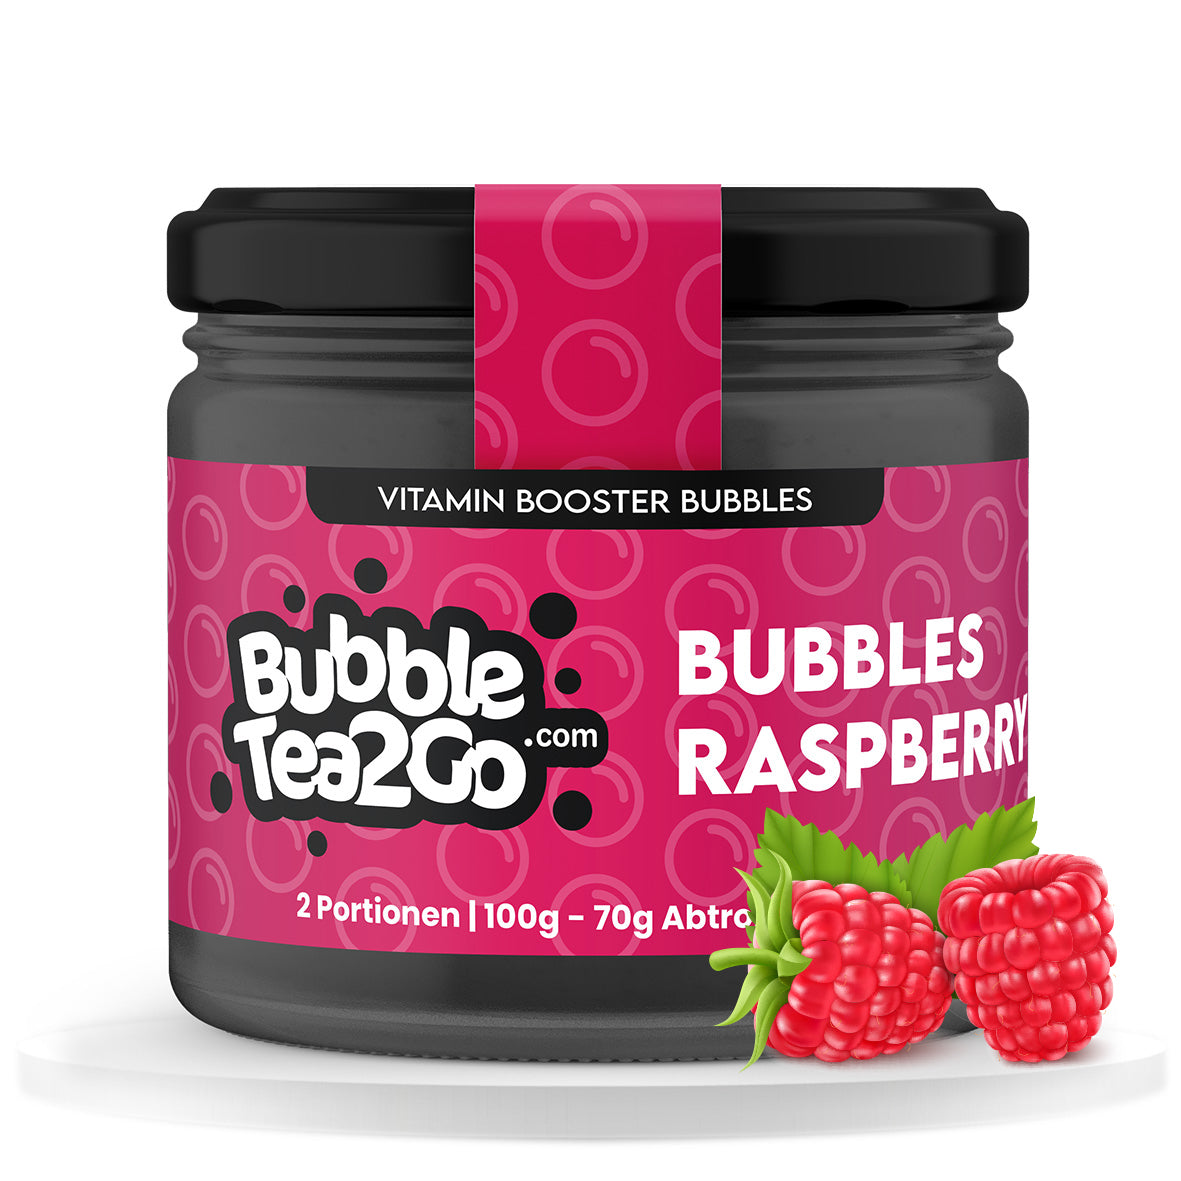 Bubbles - Raspberry 2 servings (120g)